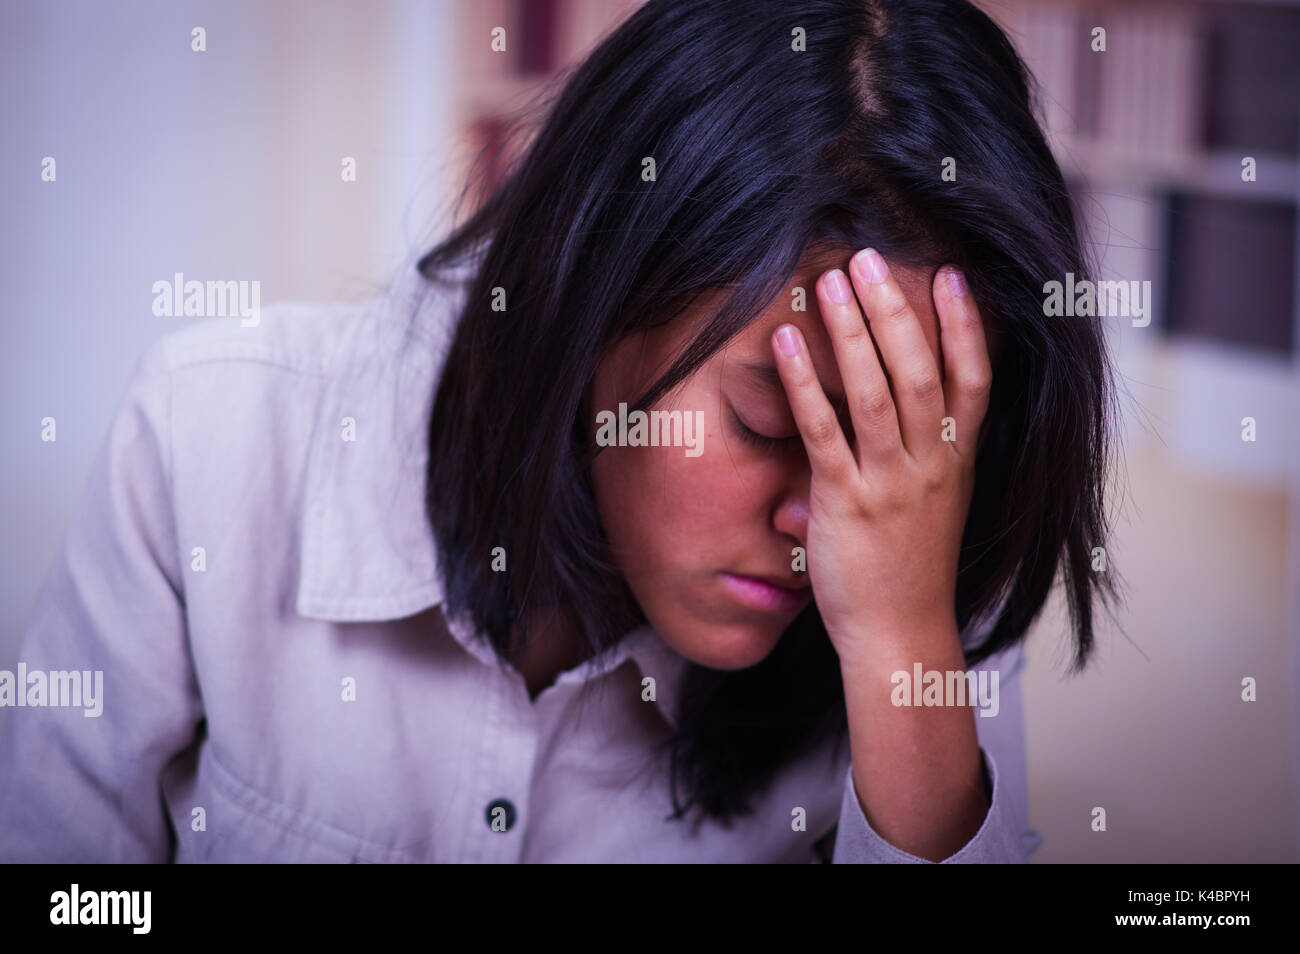 Porträt einer depressiven Teenager sitzen, den Kopf in der Hand, betonte traurige junge Frau mit psychischen Problemen, schlecht zu fühlen, brauchen psychologische Hilfe, süchtig untröstlich Mädchen in der Adoleszenz Krise Stockfoto